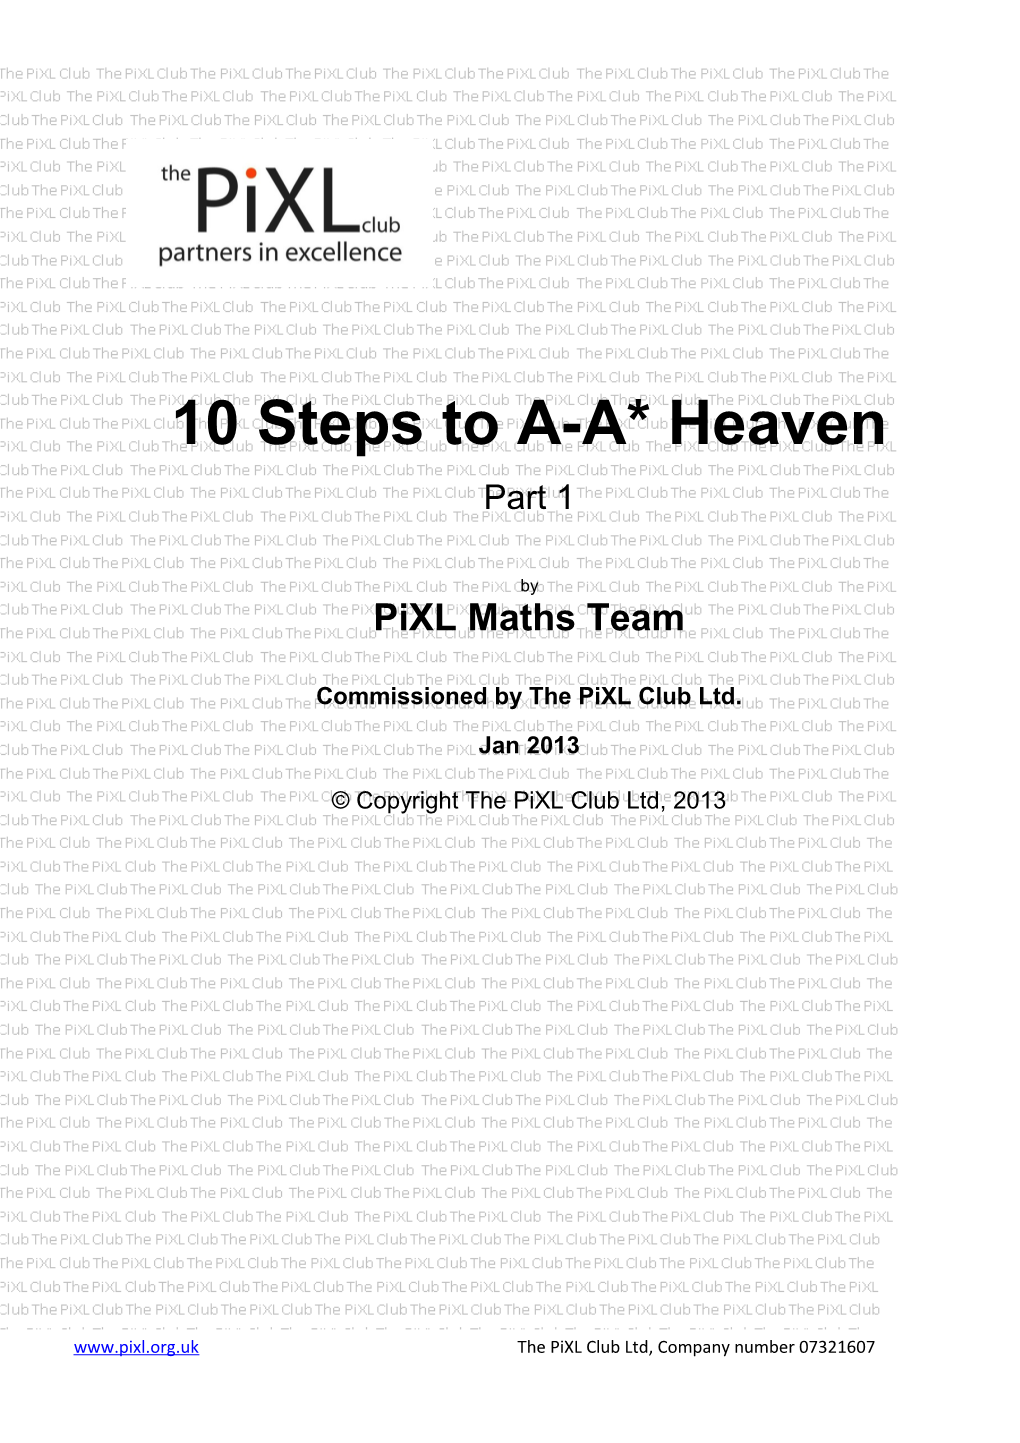 10 Steps to A-A* Heaven